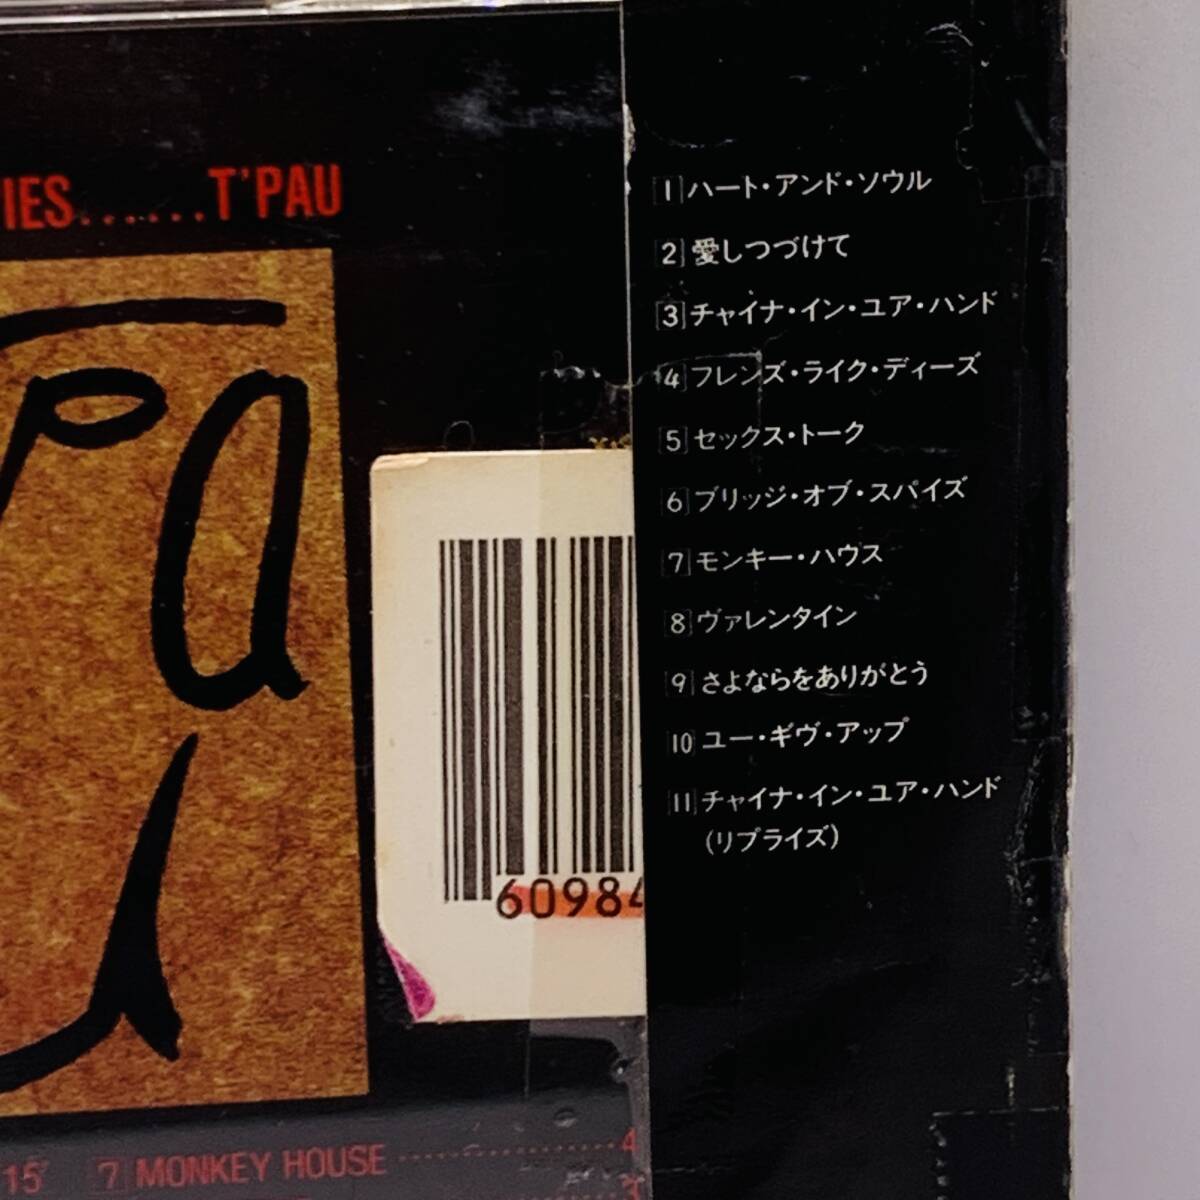 513【CD】トゥパウ[ハート・アンド・ソウル]帯付/32VD1117/レンタル落ち/T'PAU/BRIDGE OF SPIES